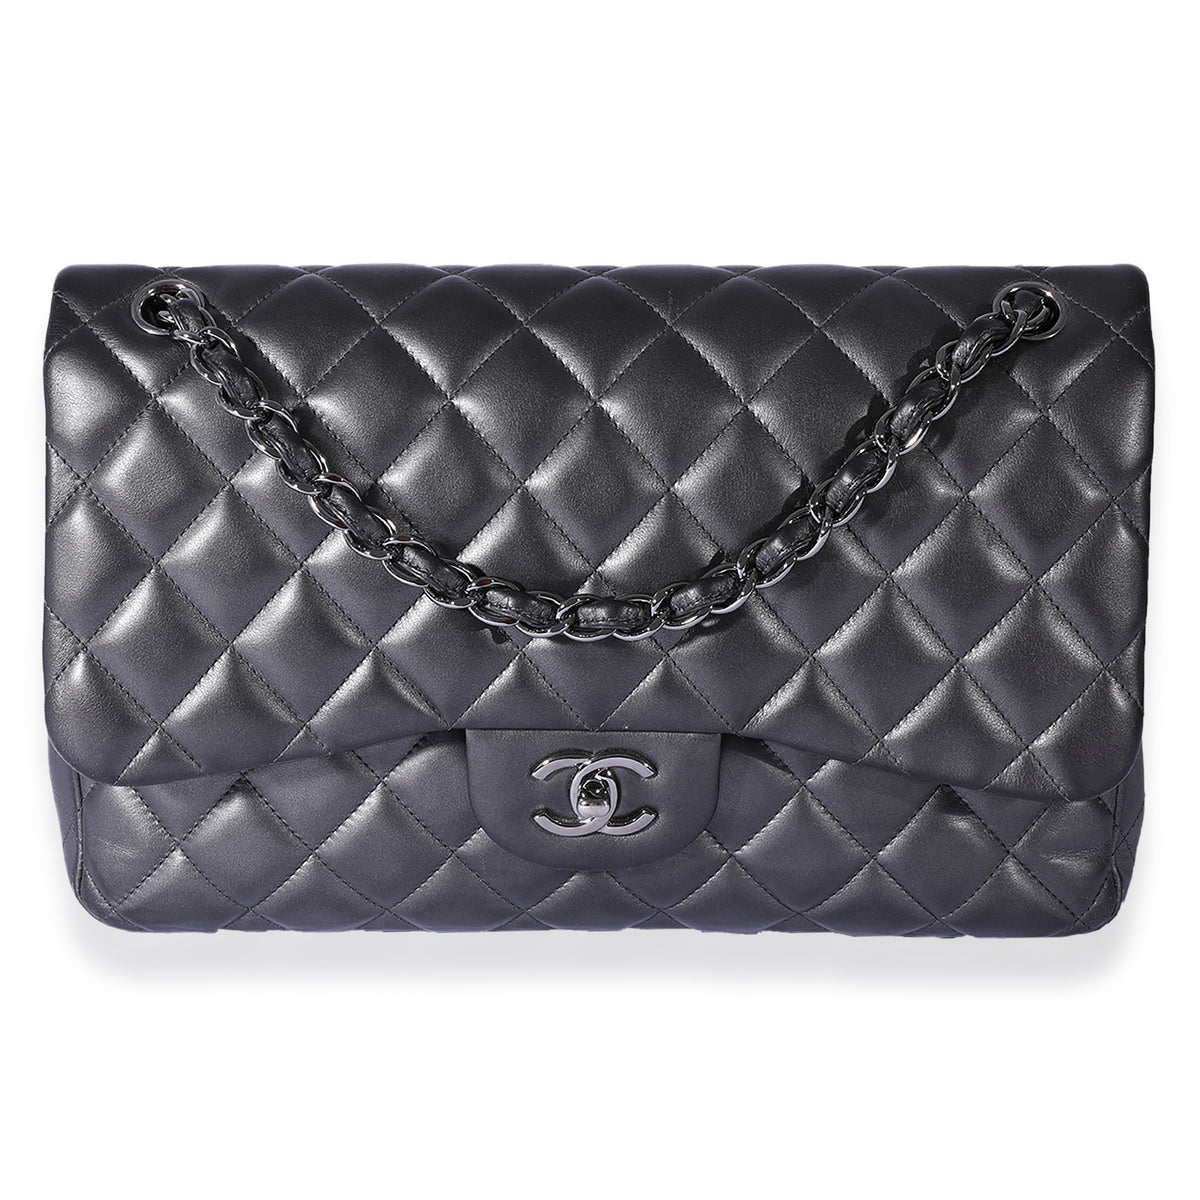 Chanel Classic Double Flap Jumbo Handbag